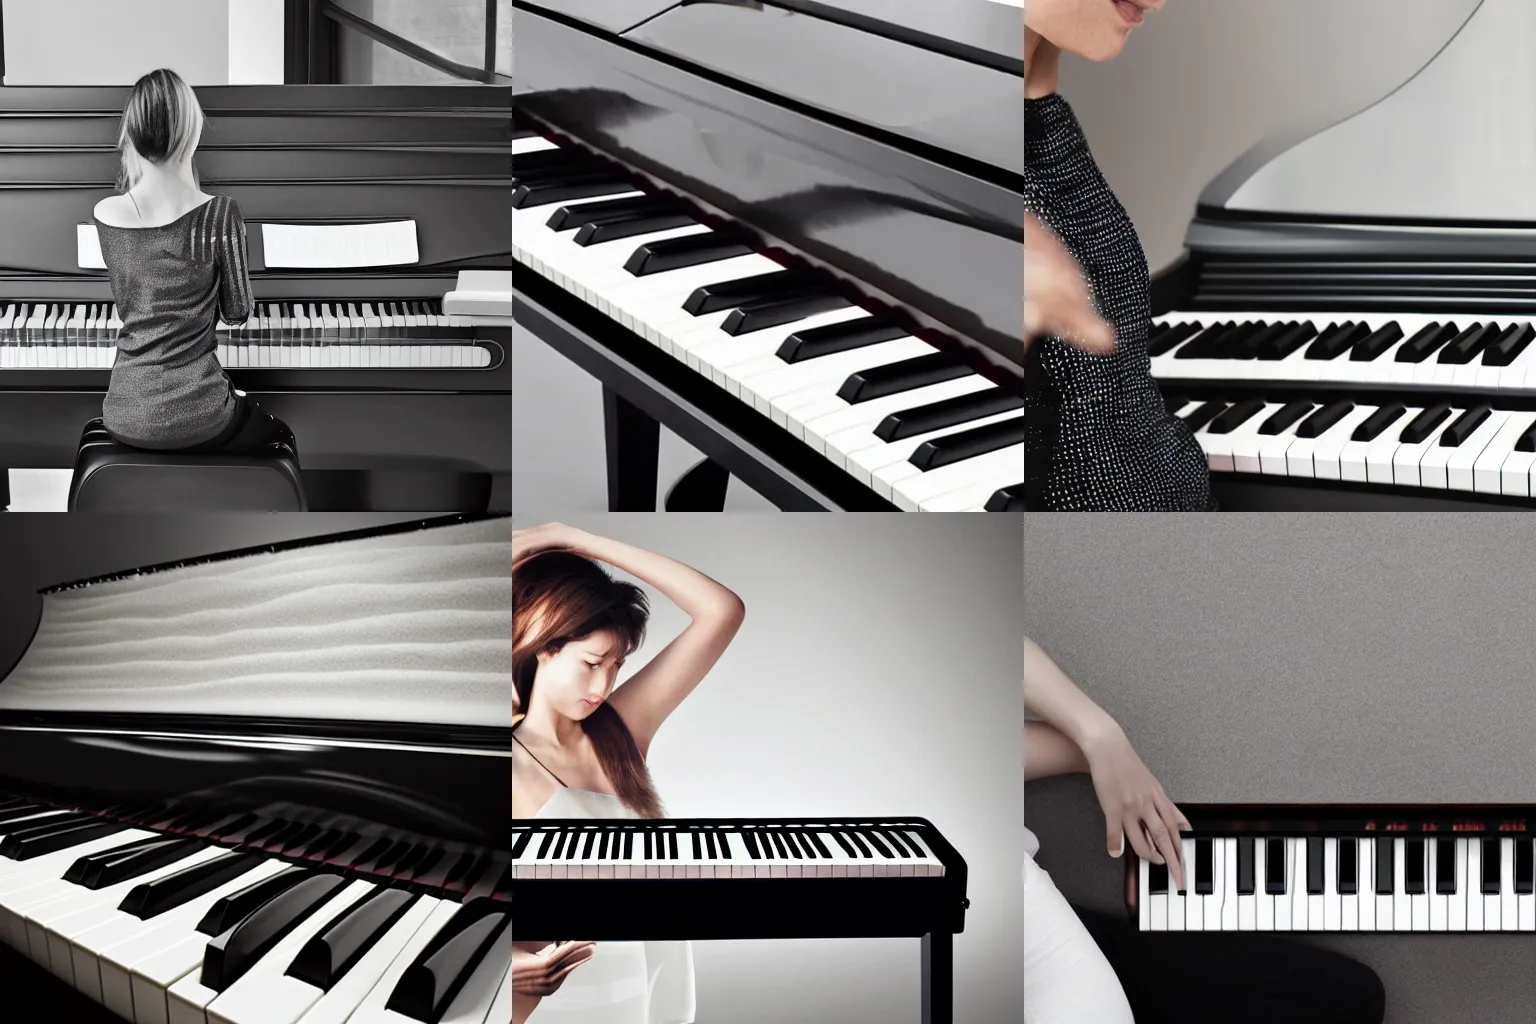 Prompt: promo photo for a futuristic idea piano designed by Apple